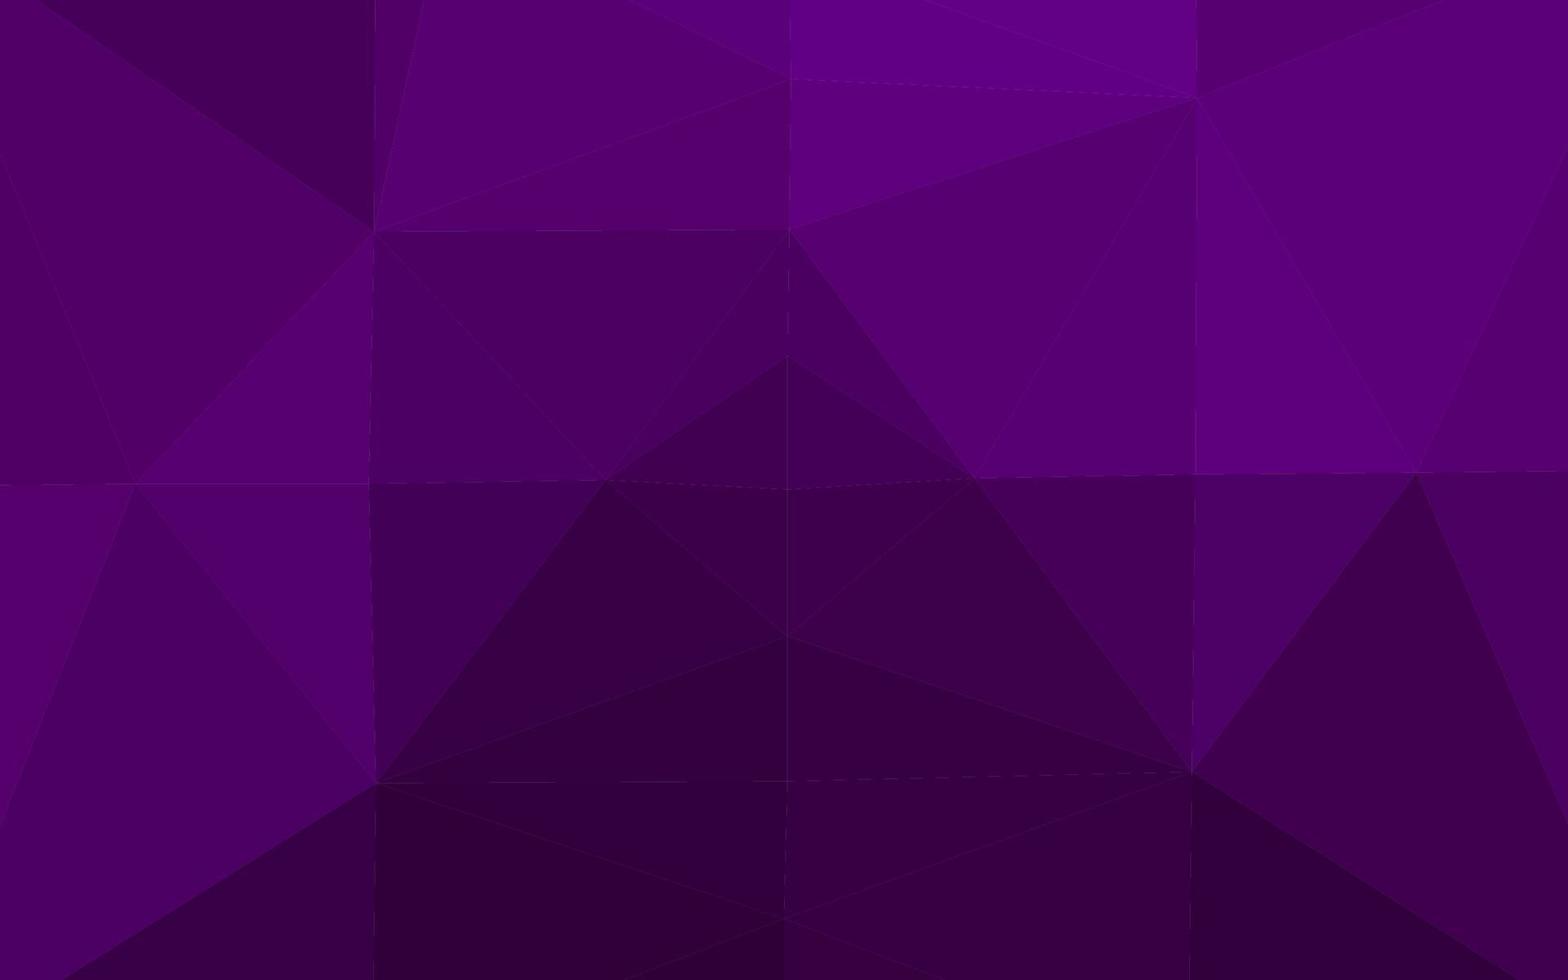 Cubierta poligonal abstracta de vector púrpura oscuro.